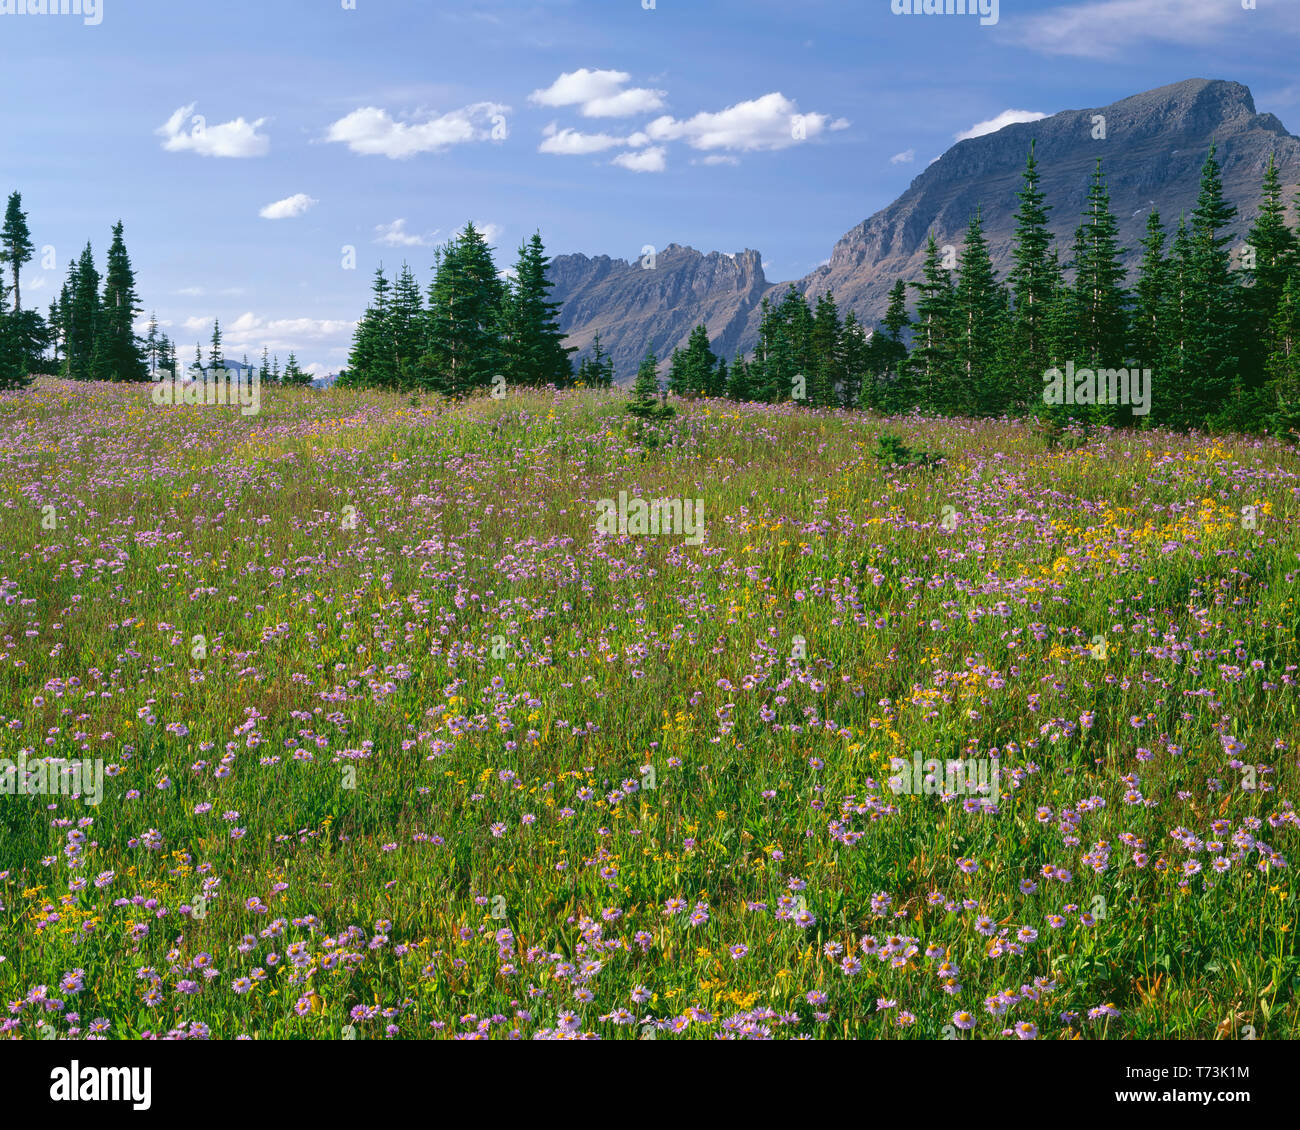 USA, Montana, le parc national des Glaciers, de prairie et d'arnica vergerette près de Logan Pass, Mount Gould (à droite) s'élève au loin. Banque D'Images